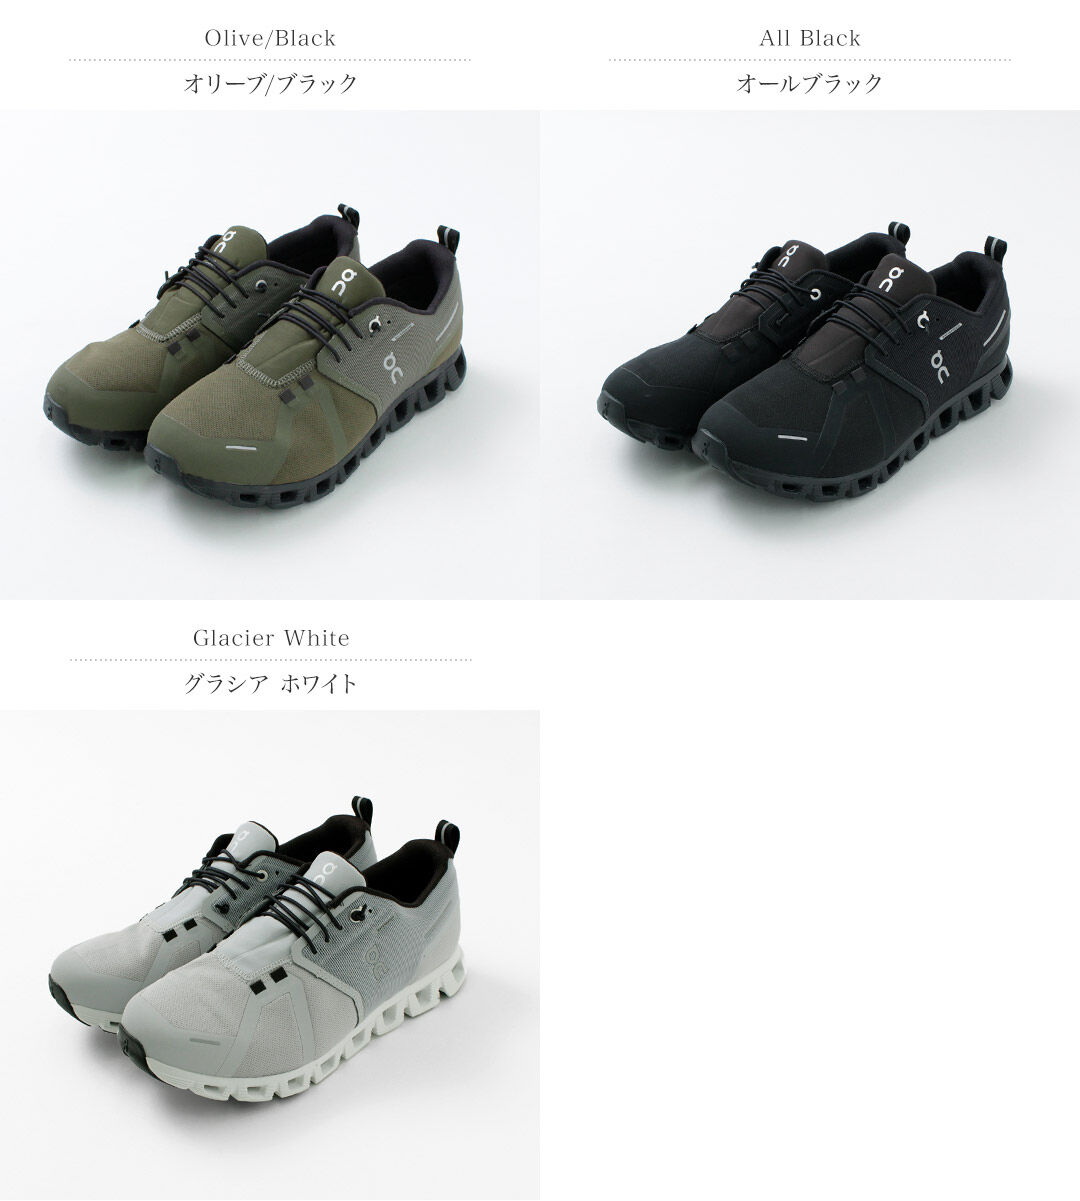 Cloud 5 Waterproof Sneakers